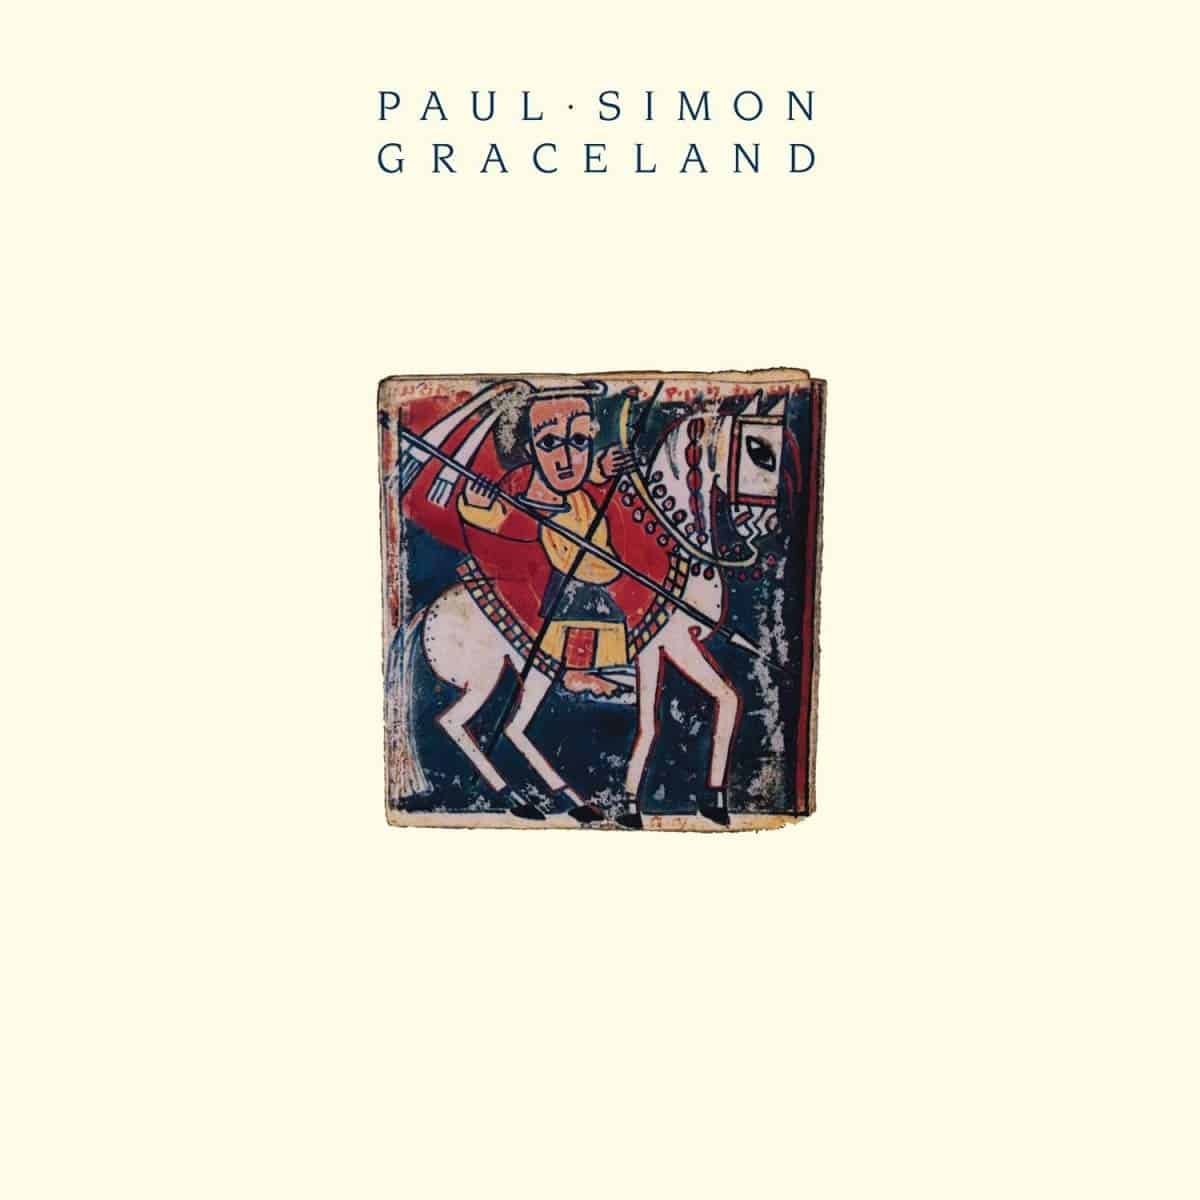 Paul-Simon-Graceland-vinyl-record-album-front